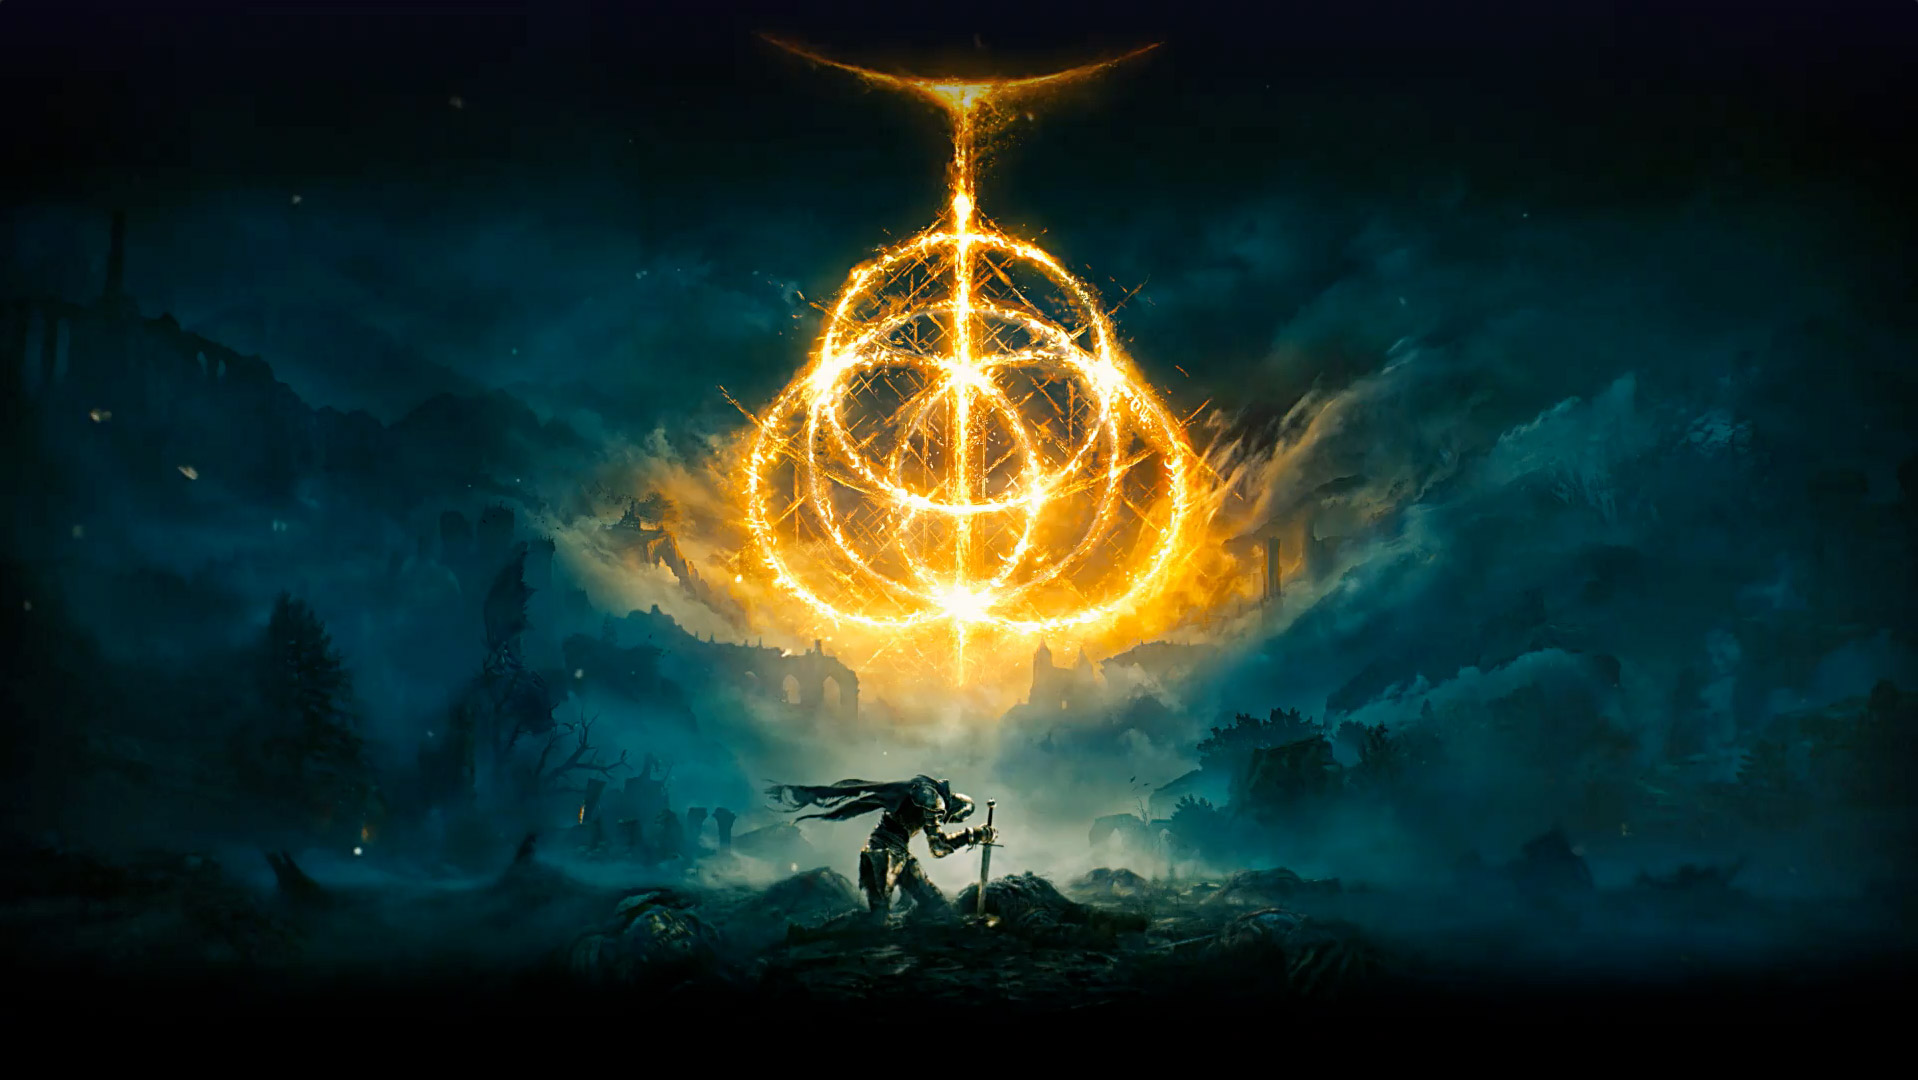 Elden Ring. Viaceré ohnivé kruhy vytvárajú symbol Elden Ring. Postava rytiera s mečom zabodnutým do zeme na pustom mieste zahalenom hmlou.